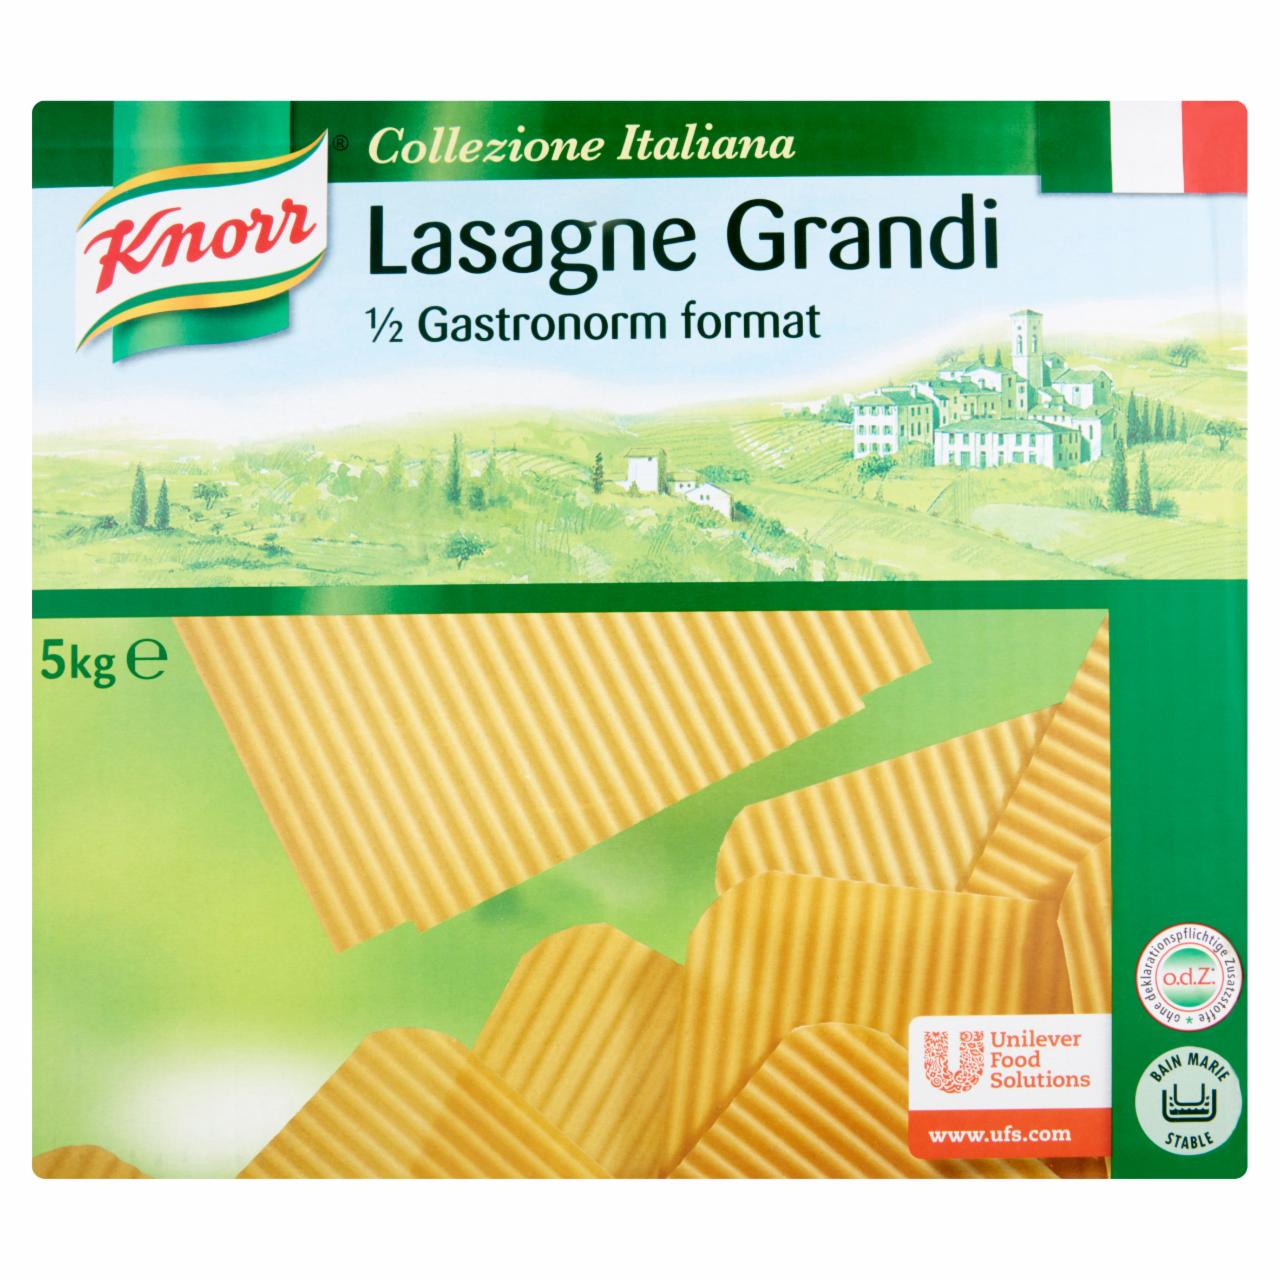 Képek - Knorr Lasagne Grandi durum száraztészta lapok 5 kg